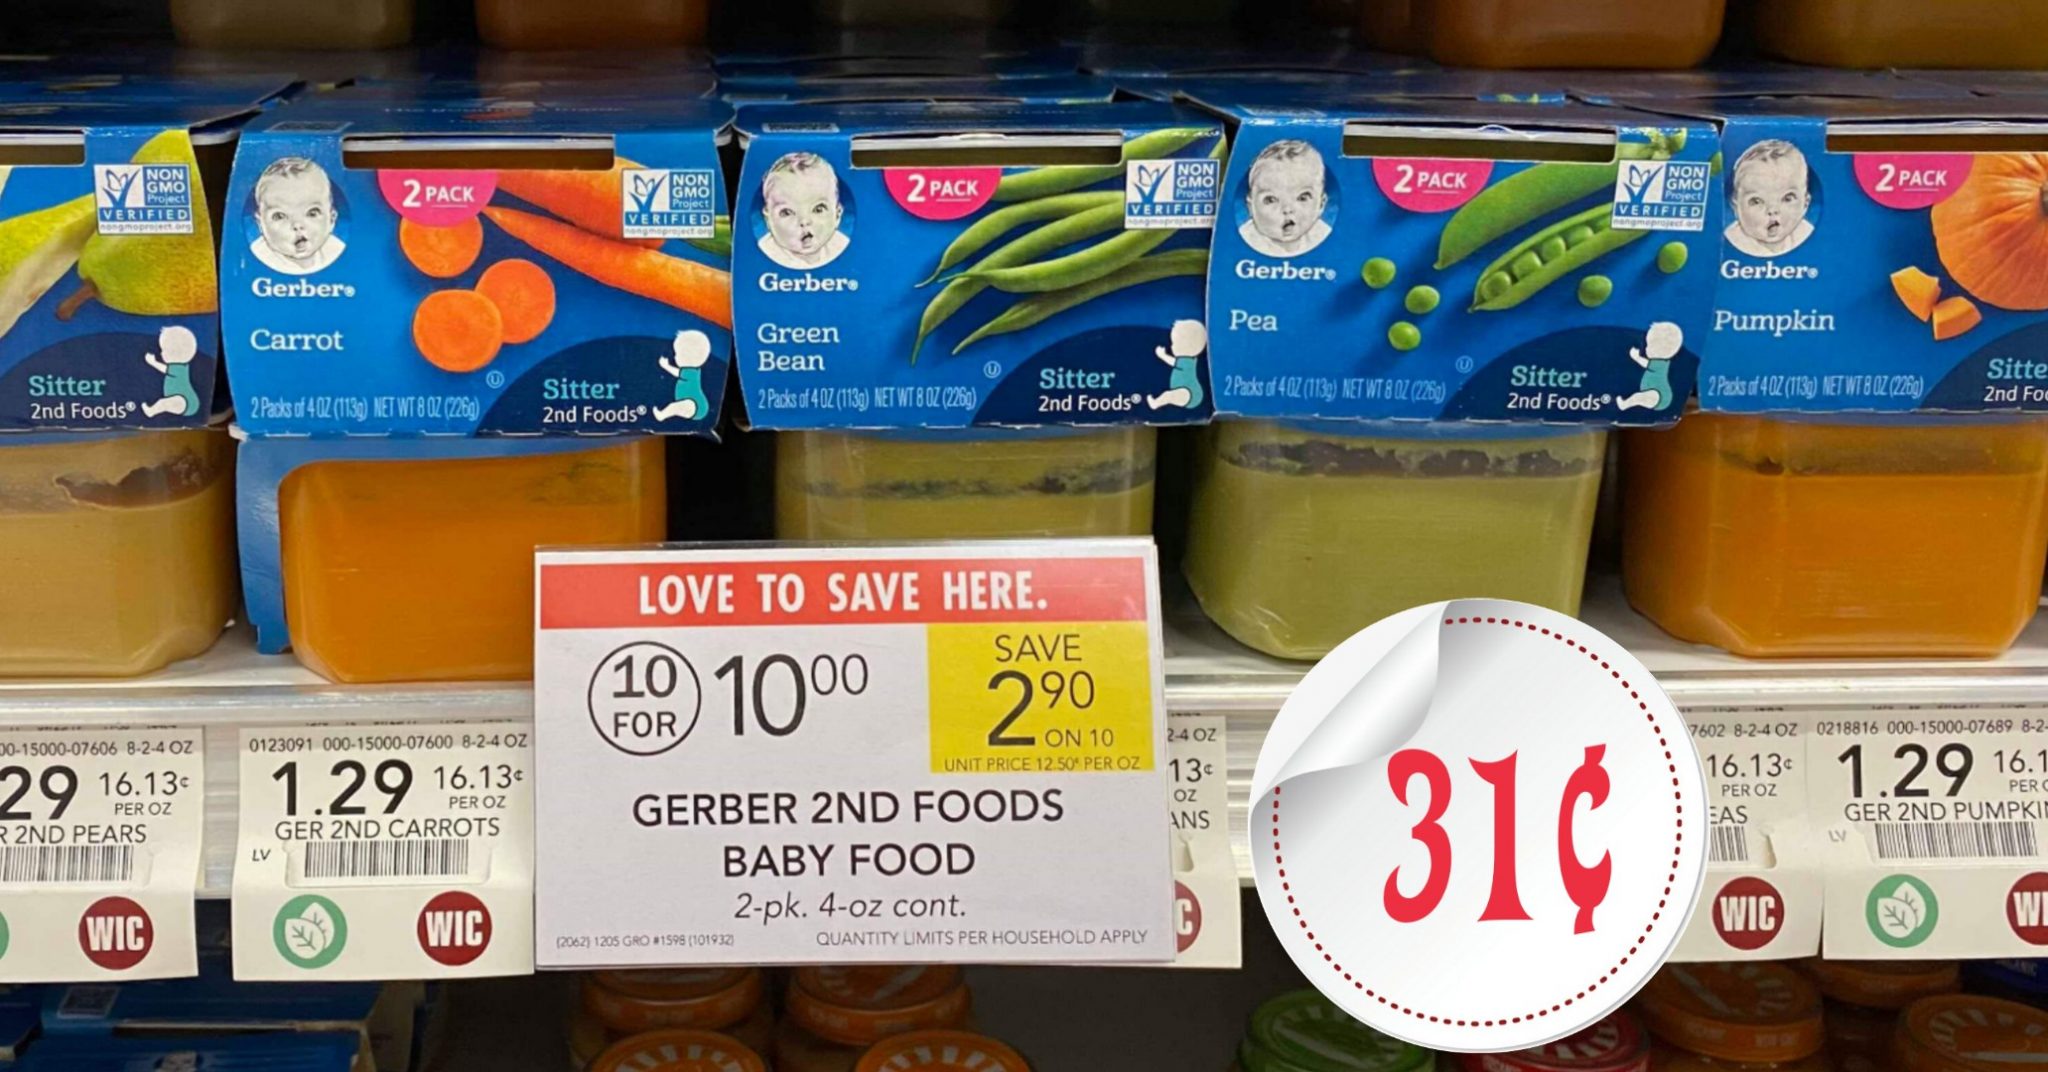 Gerber Baby Food Deals – Coupon Reset!